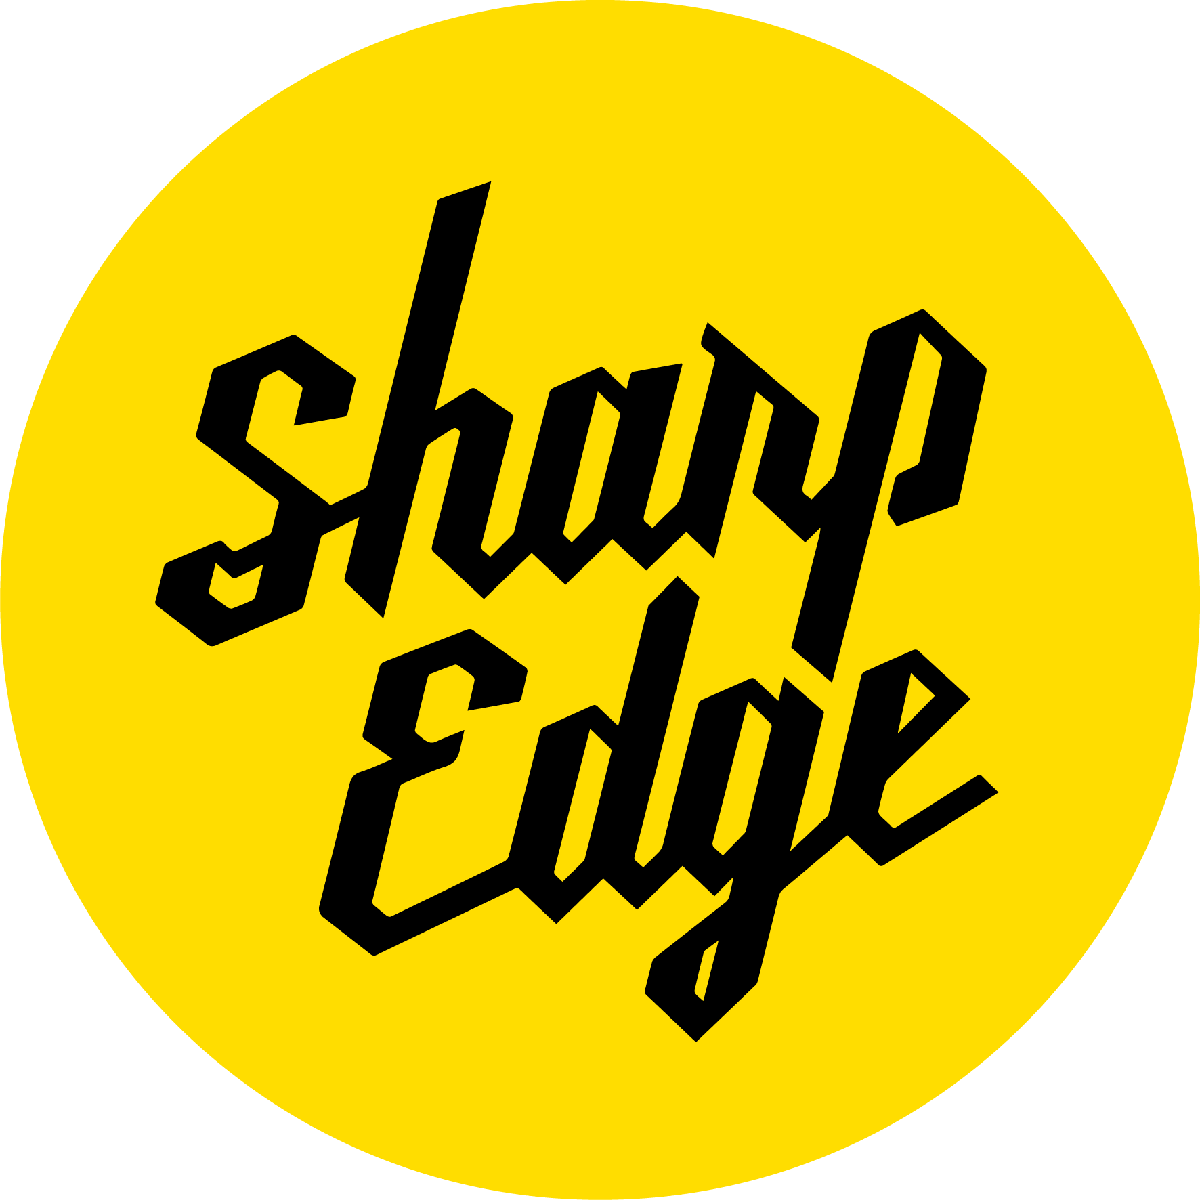 SHARP EDGE nouveau partenaire des Bulldogs de Liège